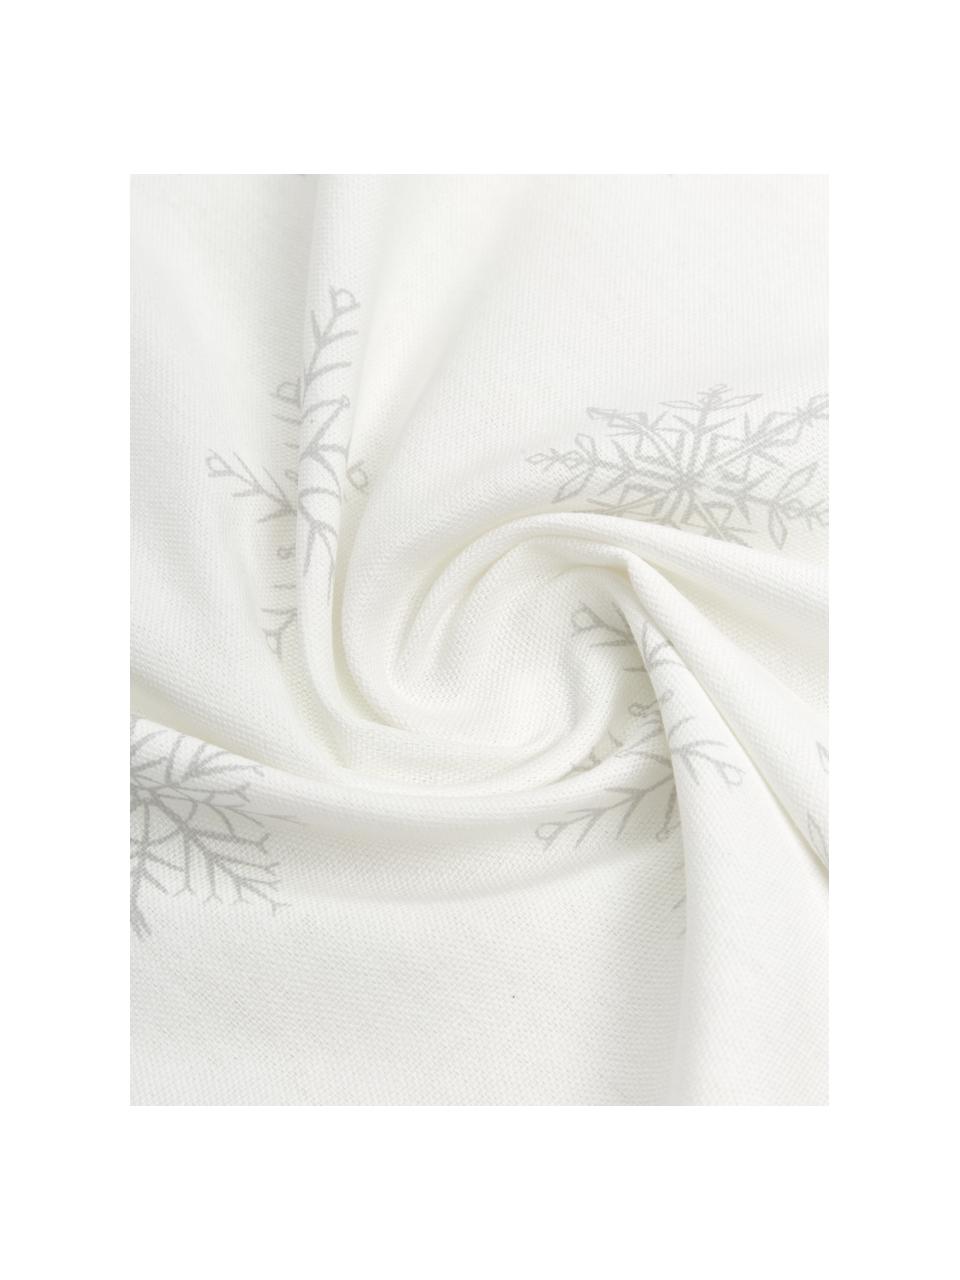 Ubrus Snow, 100% bavlna, z udržitelného pěstování bavlny, Bílá, krémová, Š 145 cm, D 200 cm